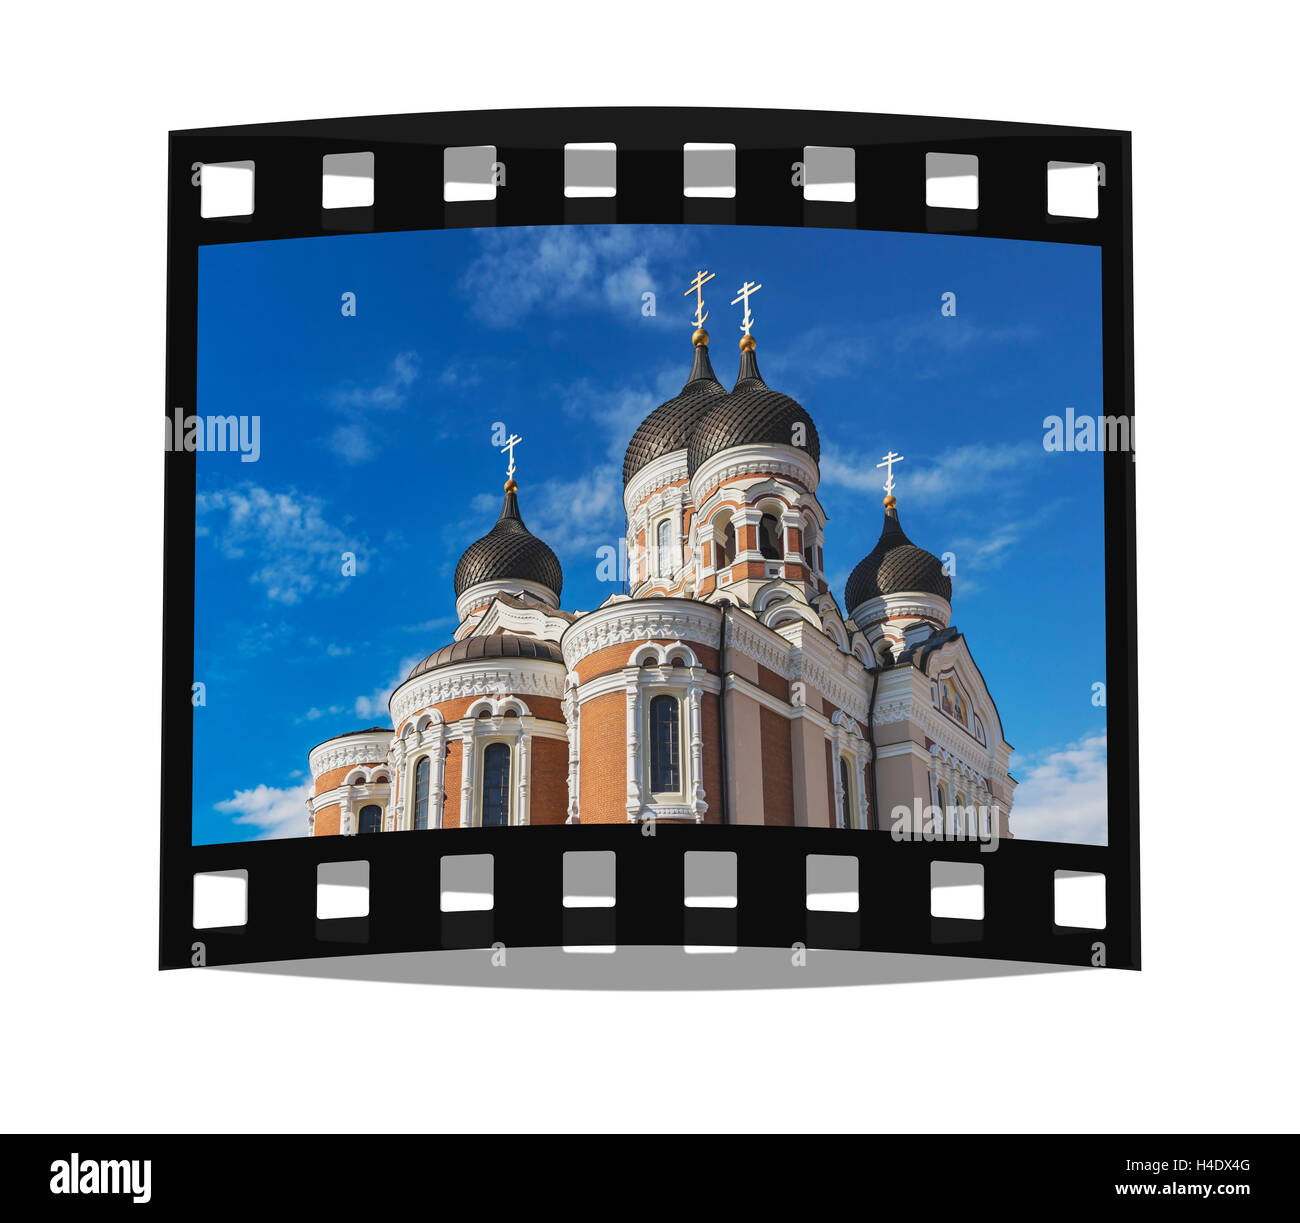 La cathédrale Alexandre Nevski est situé sur la colline de la cathédrale dans la ville haute de Tallinn, Estonie, pays Baltes, Europe Banque D'Images